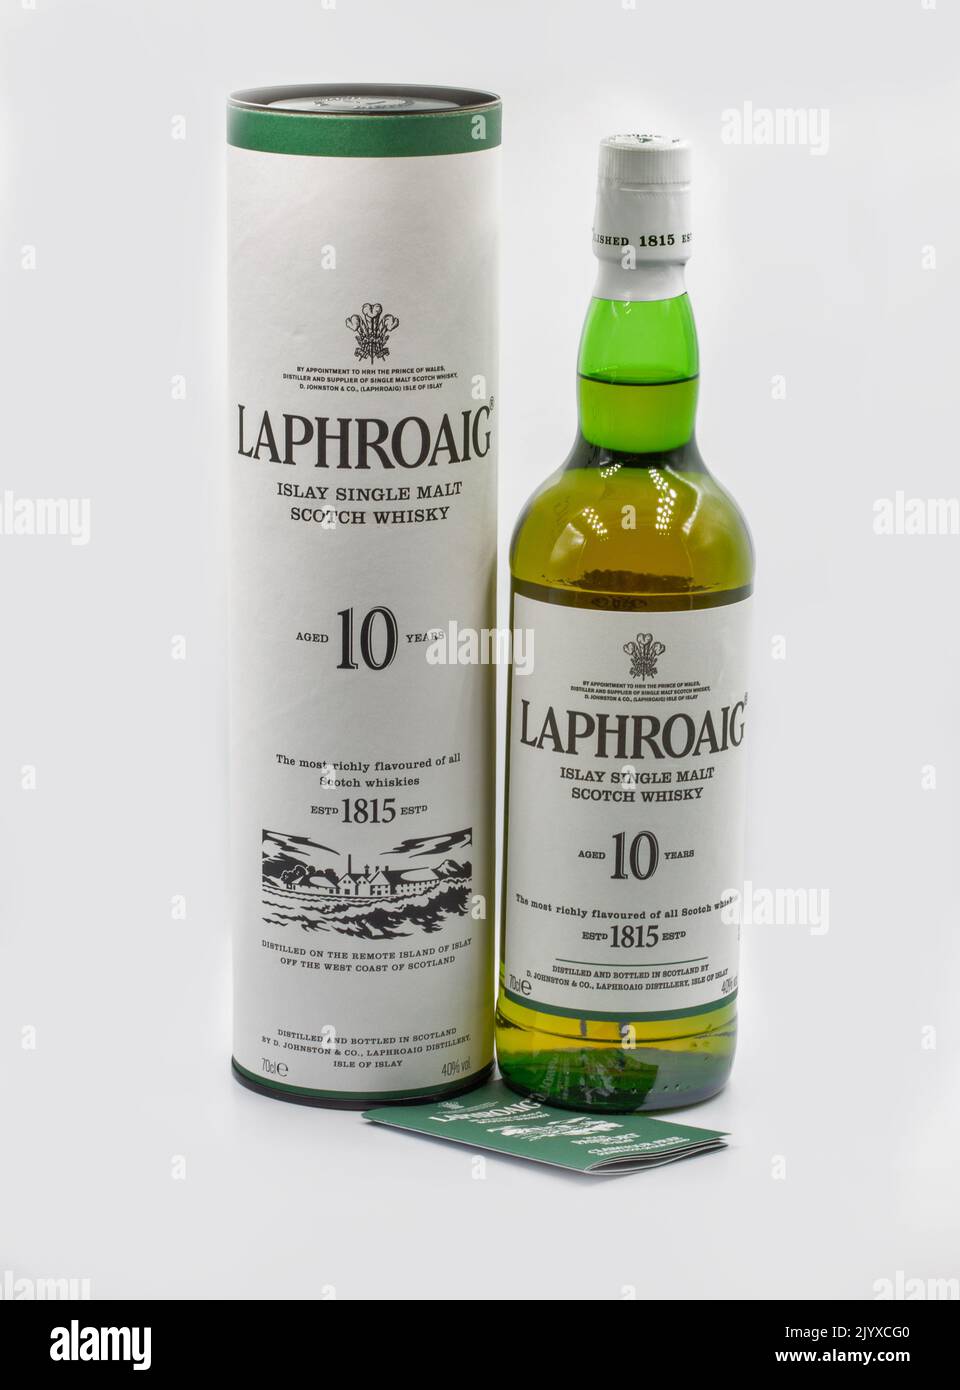 Kiev, Ucraina - 06 novembre 2011: Bottiglia e scatola di Scotch Single Malt Whisky Laphroaig 10 anni primo piano su bianco. La distilleria Laphroaig è un'isola Foto Stock